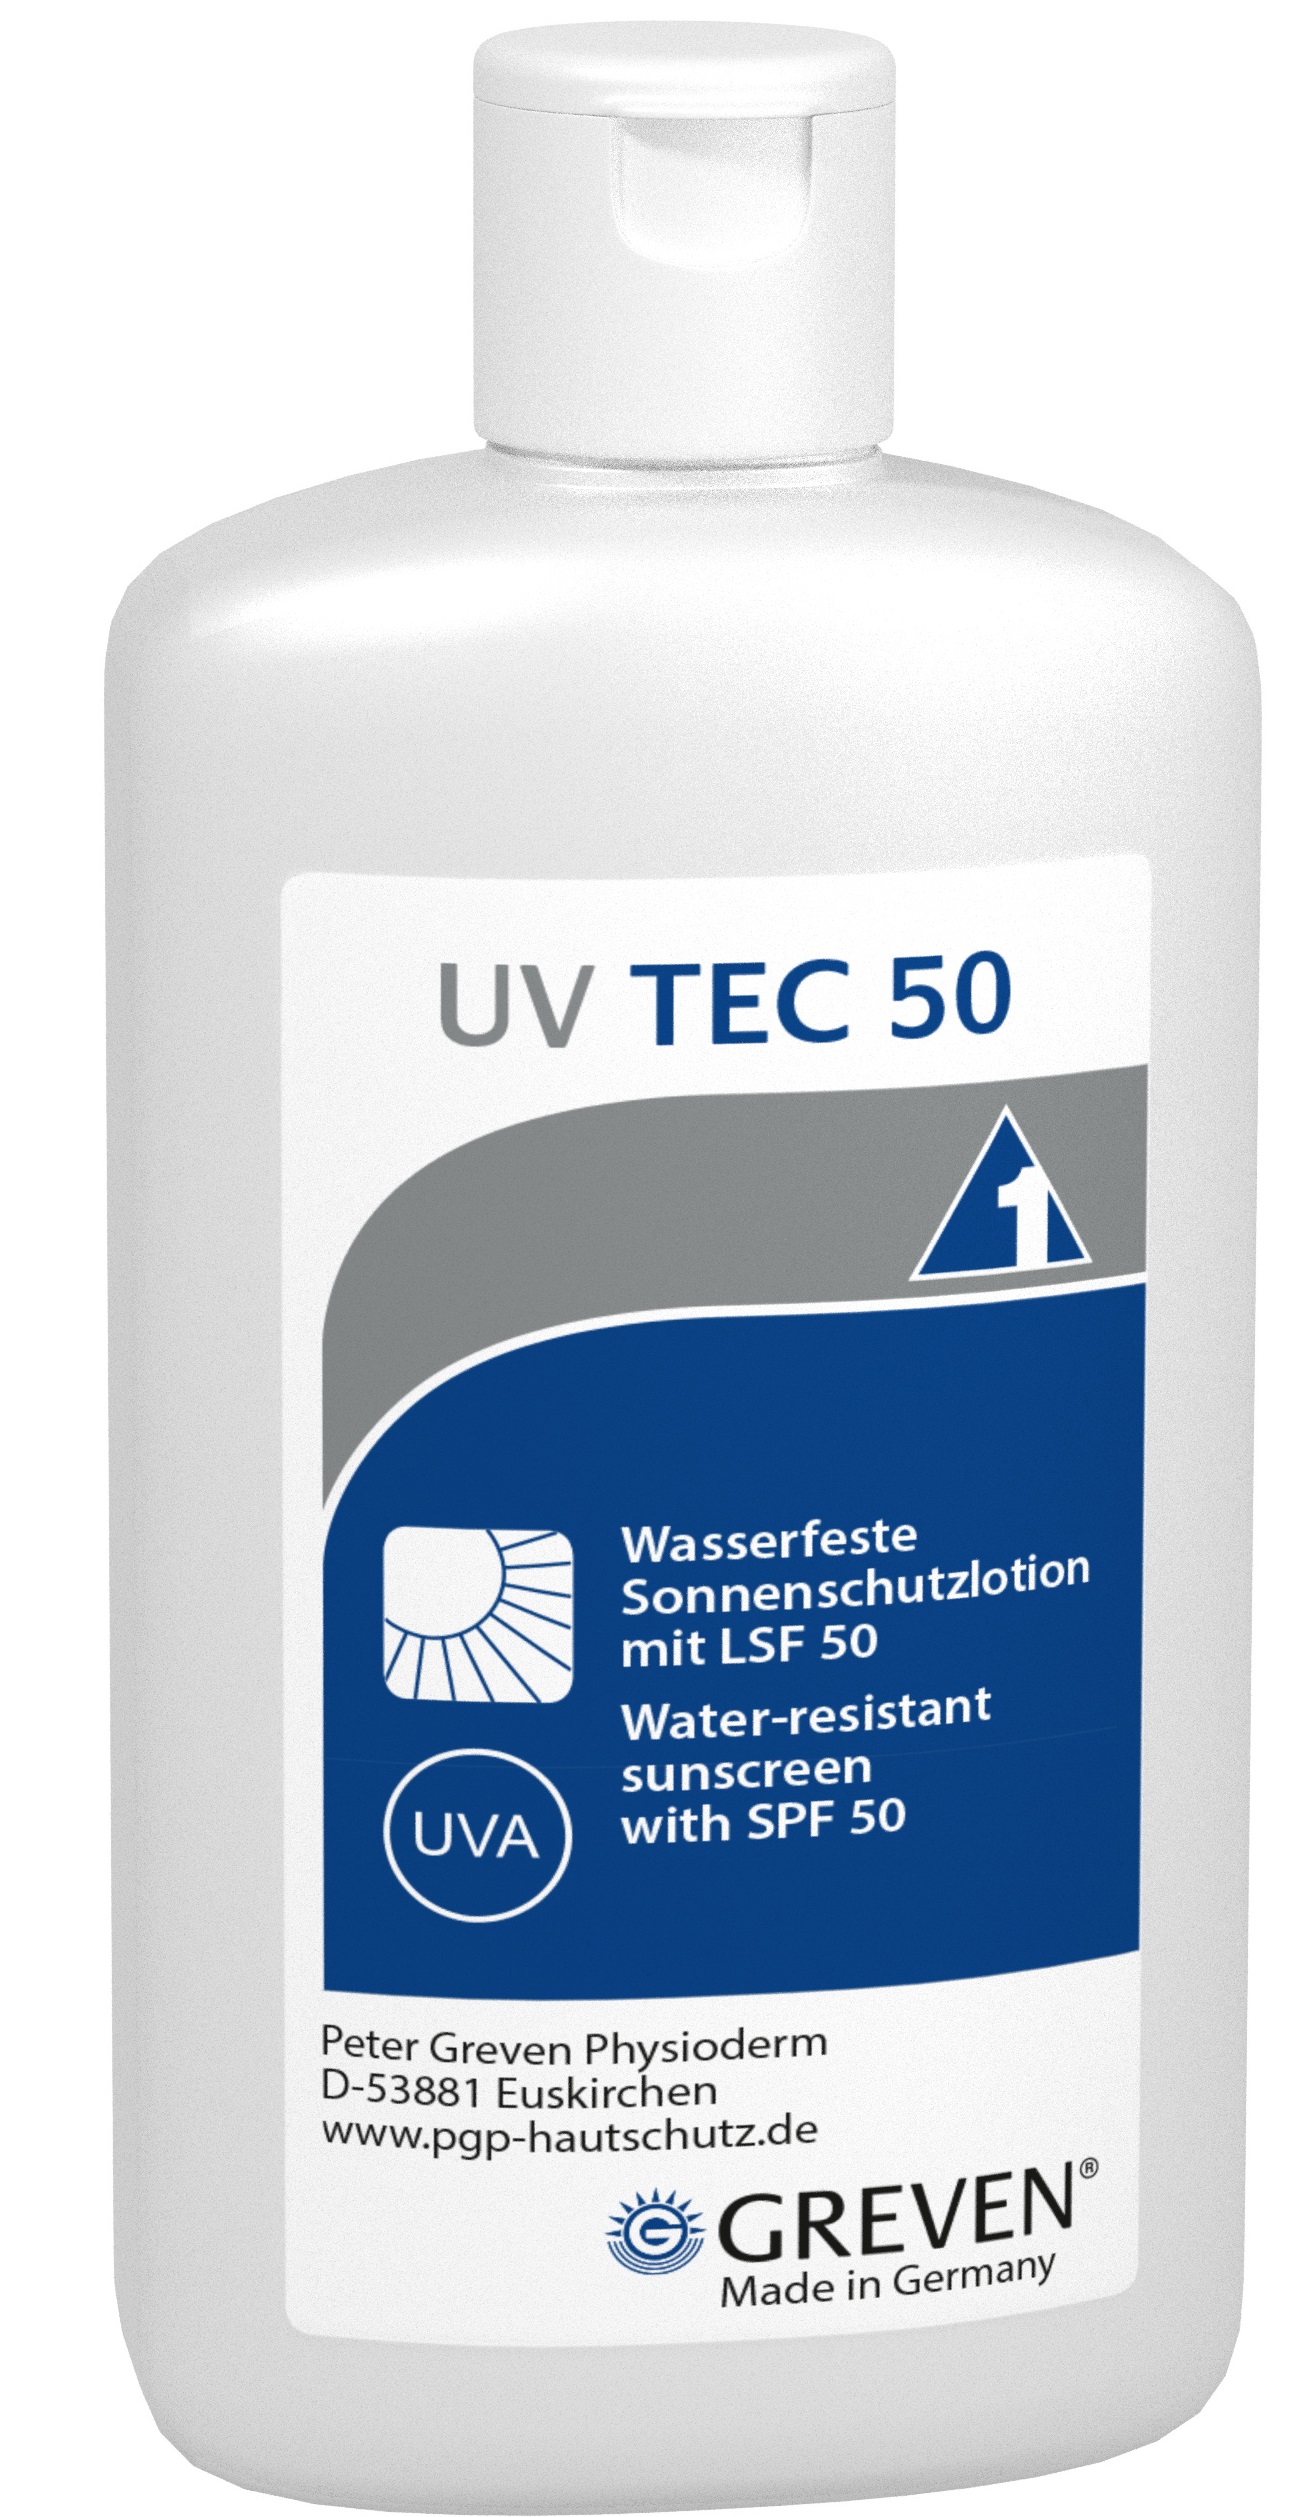 GREVEN® UV TEC 50 Sonnenschutzlotion mit LSF 50, 100 ml Flasche, 14339005